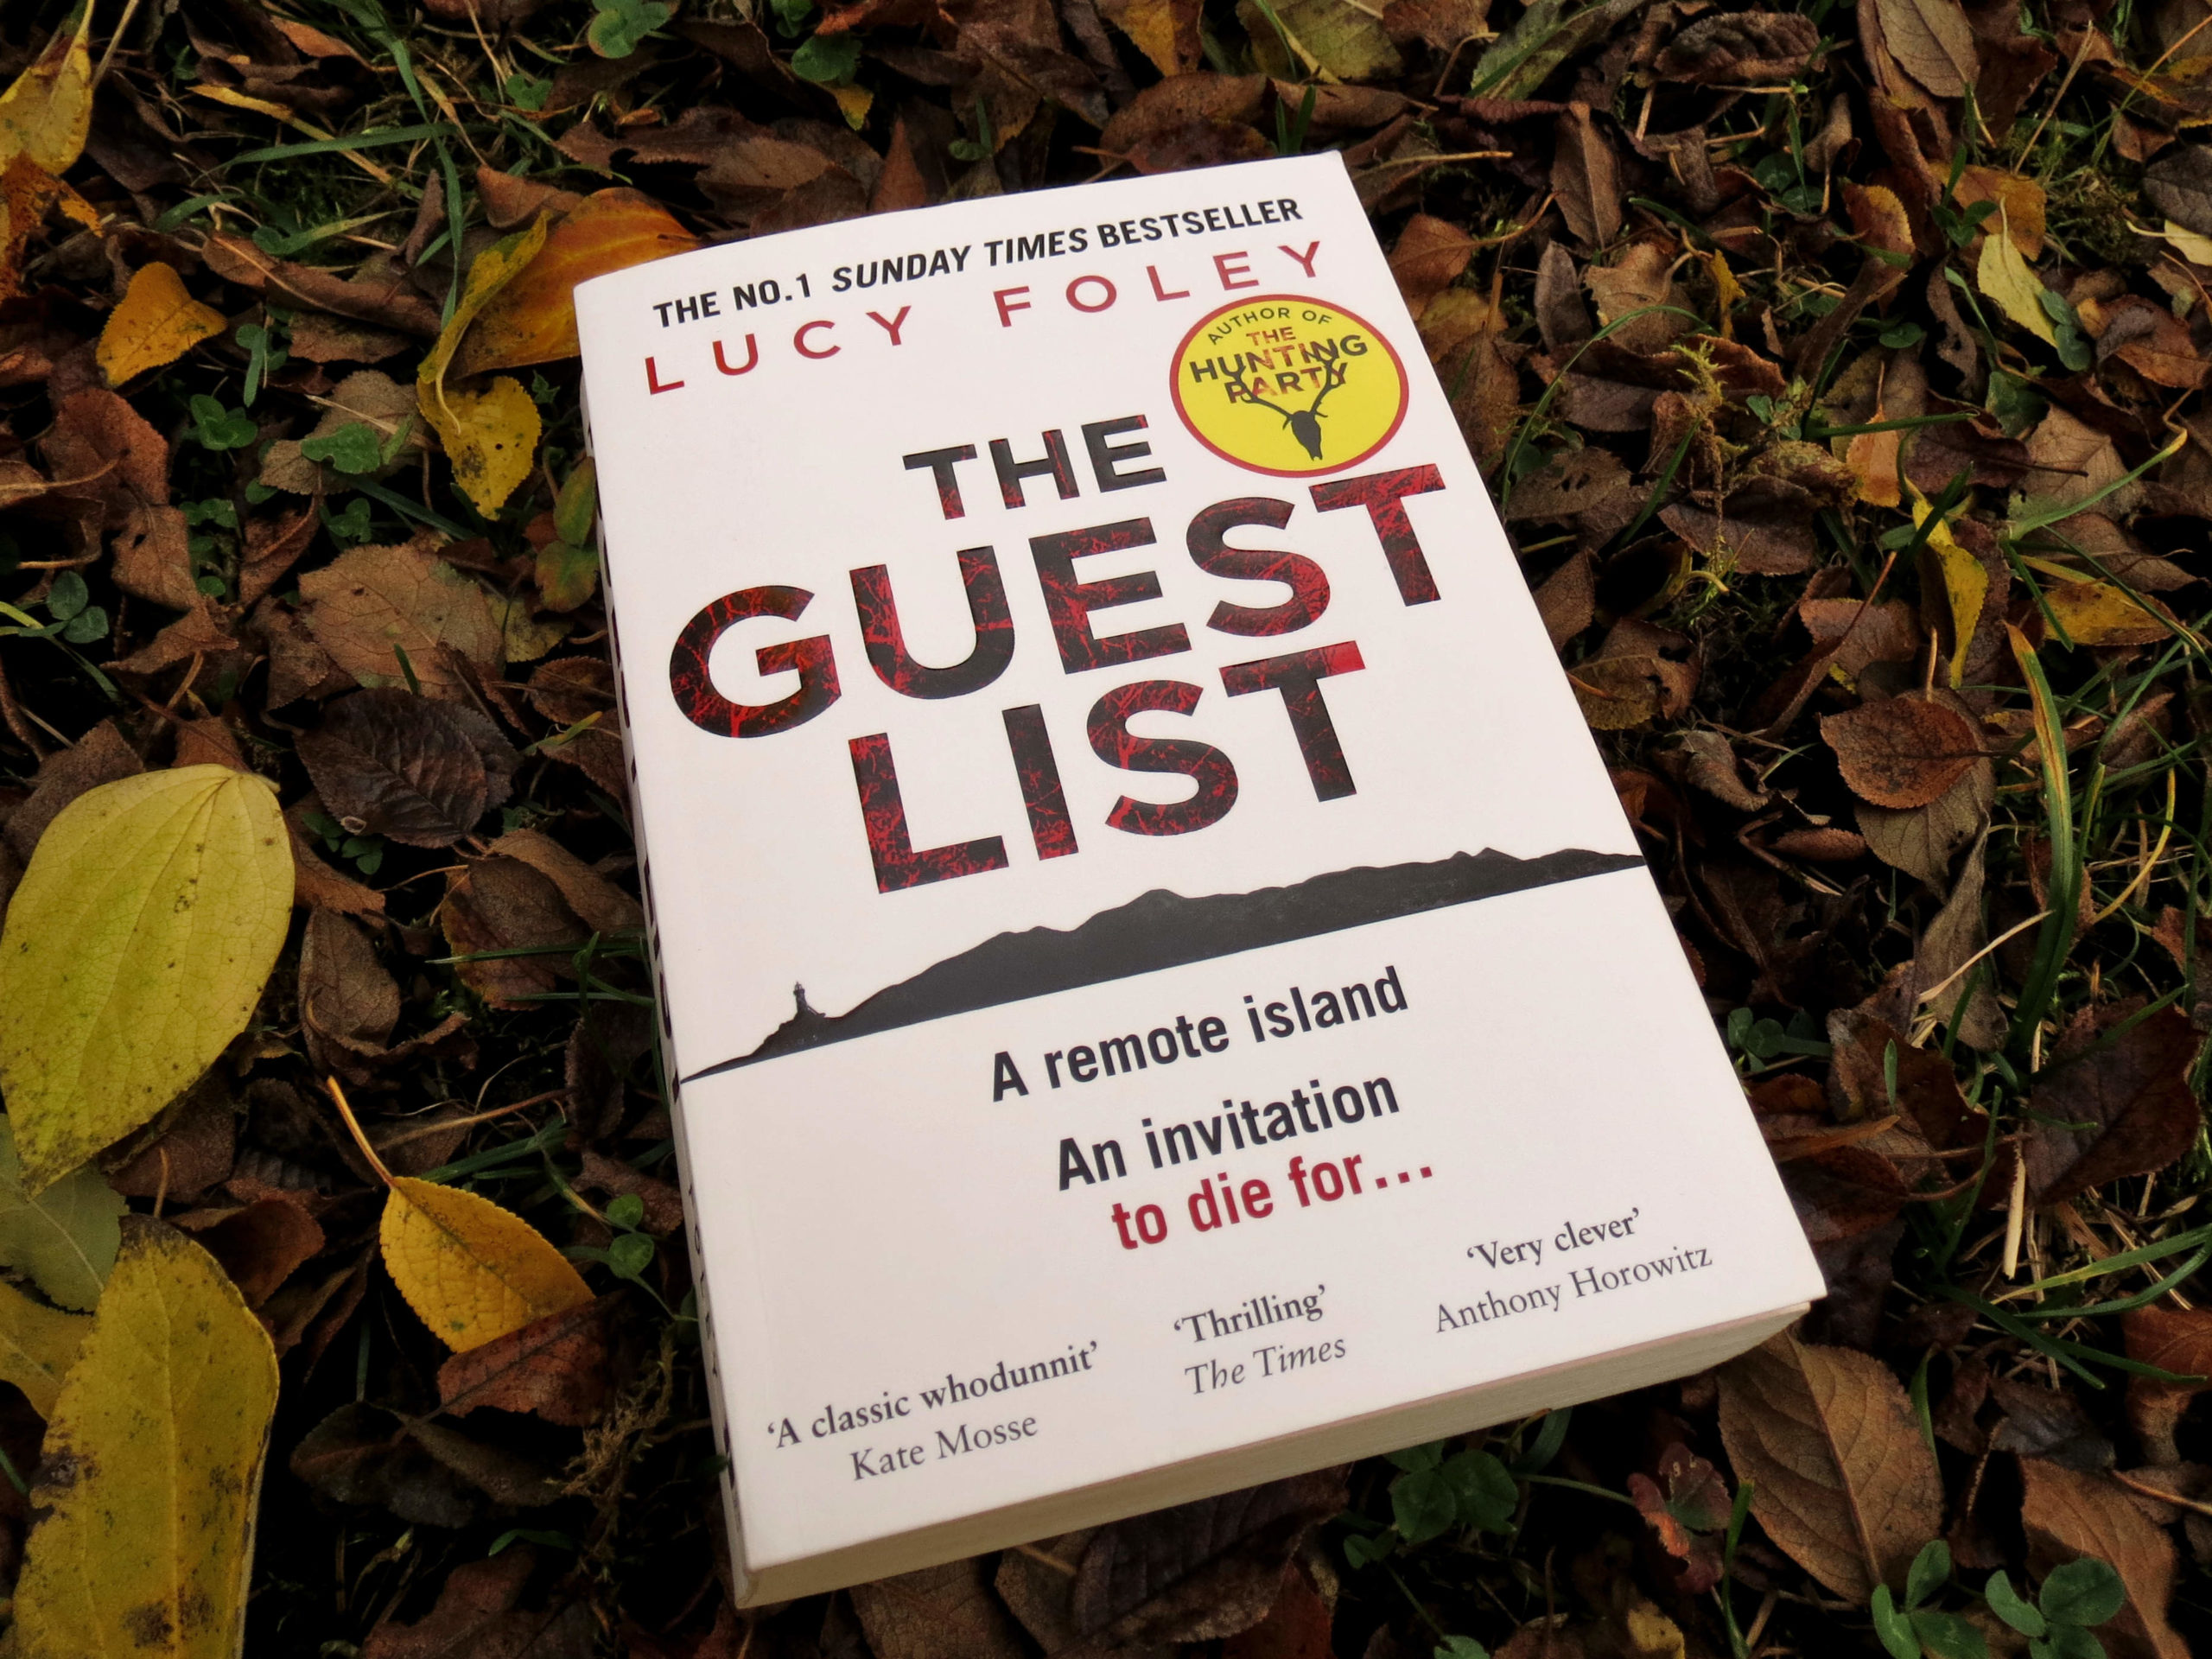 "The Guest List" von Lucy Foley liegt in einer Wiese voller herbstlichem Laub